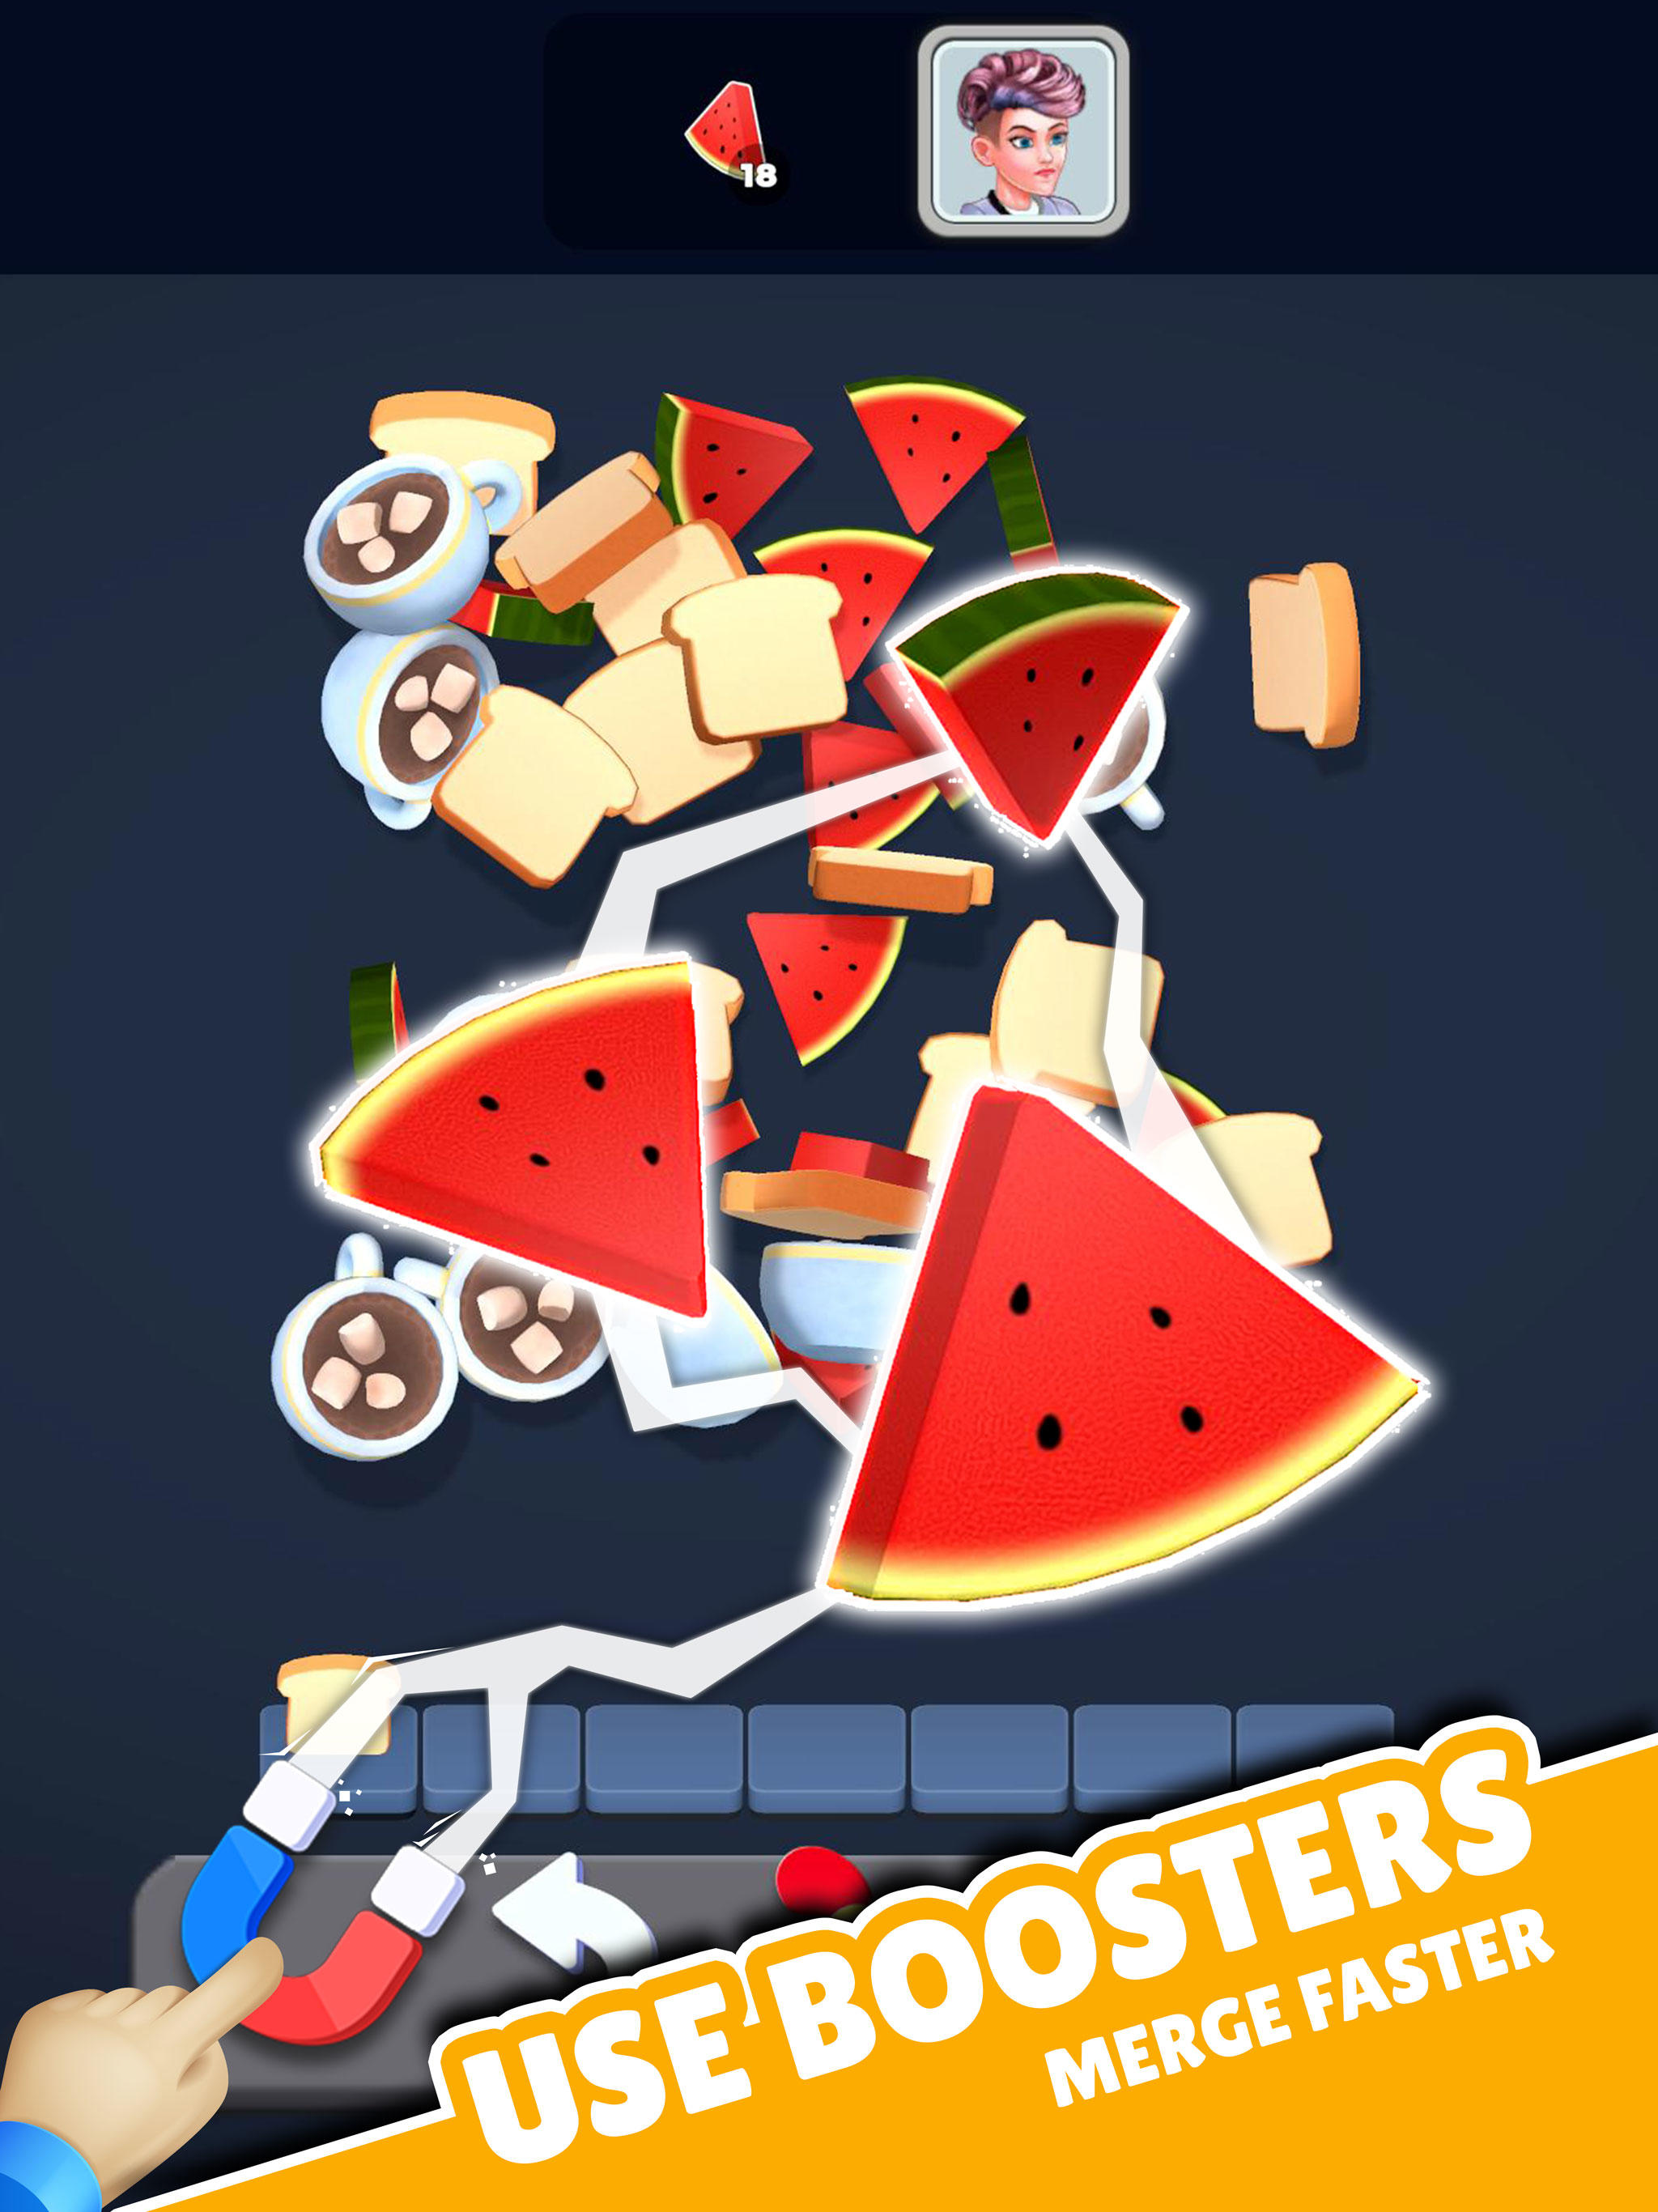 Match Food - Triple Match 3d screenshot game